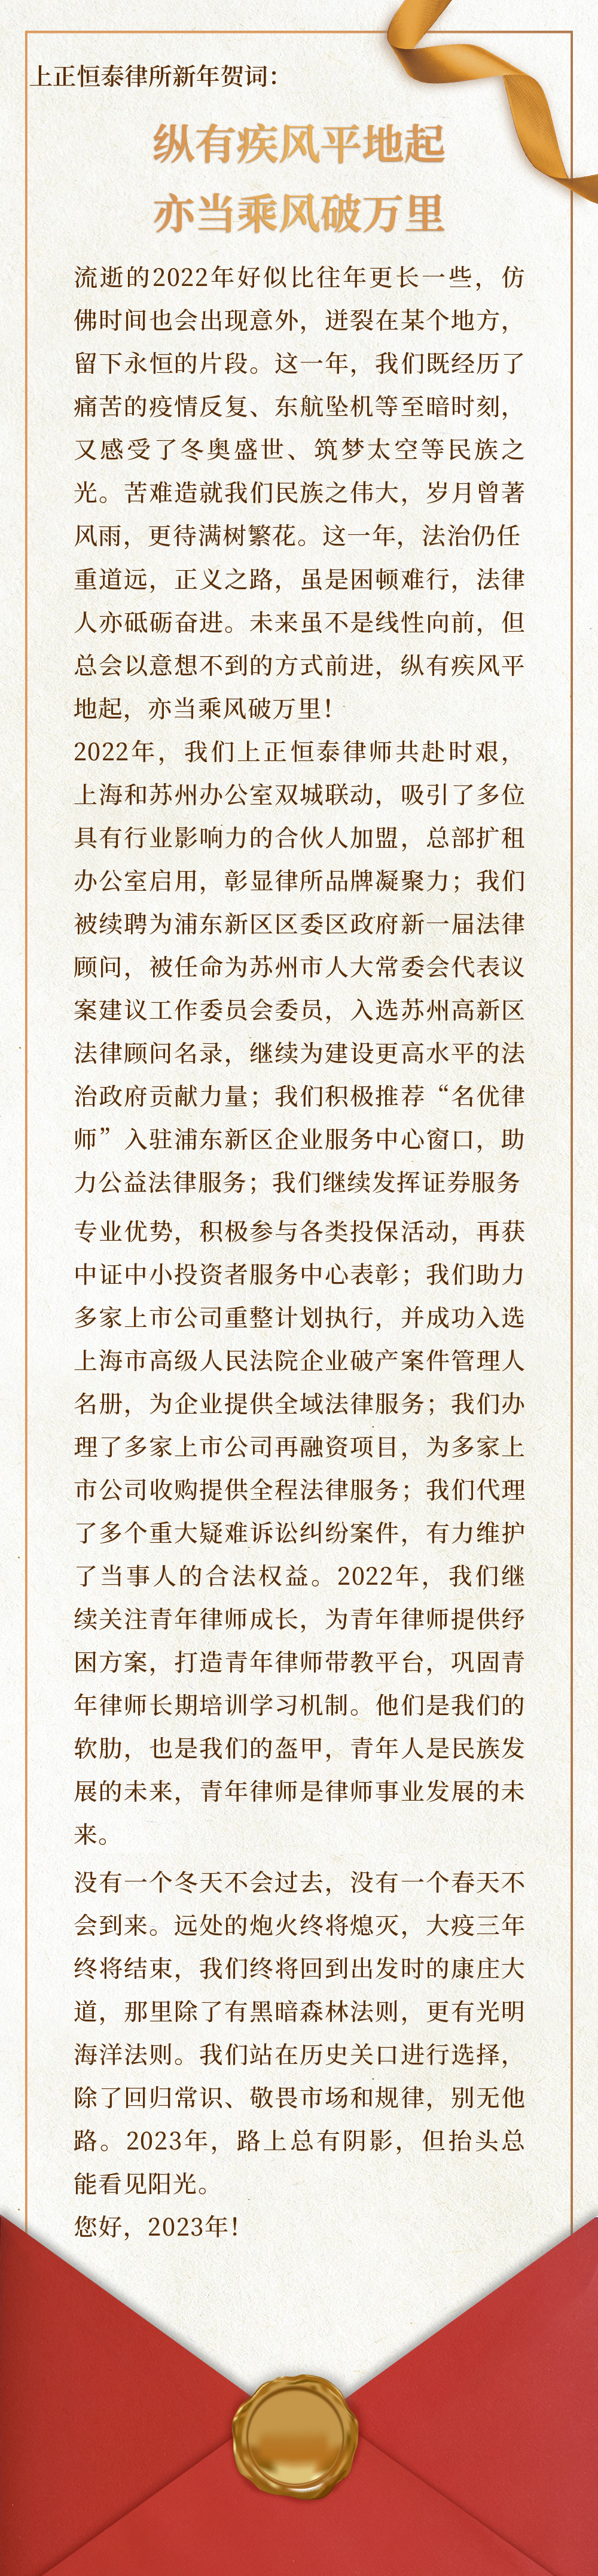 元旦新年跨年感谢信回顾文章长图 (2).png